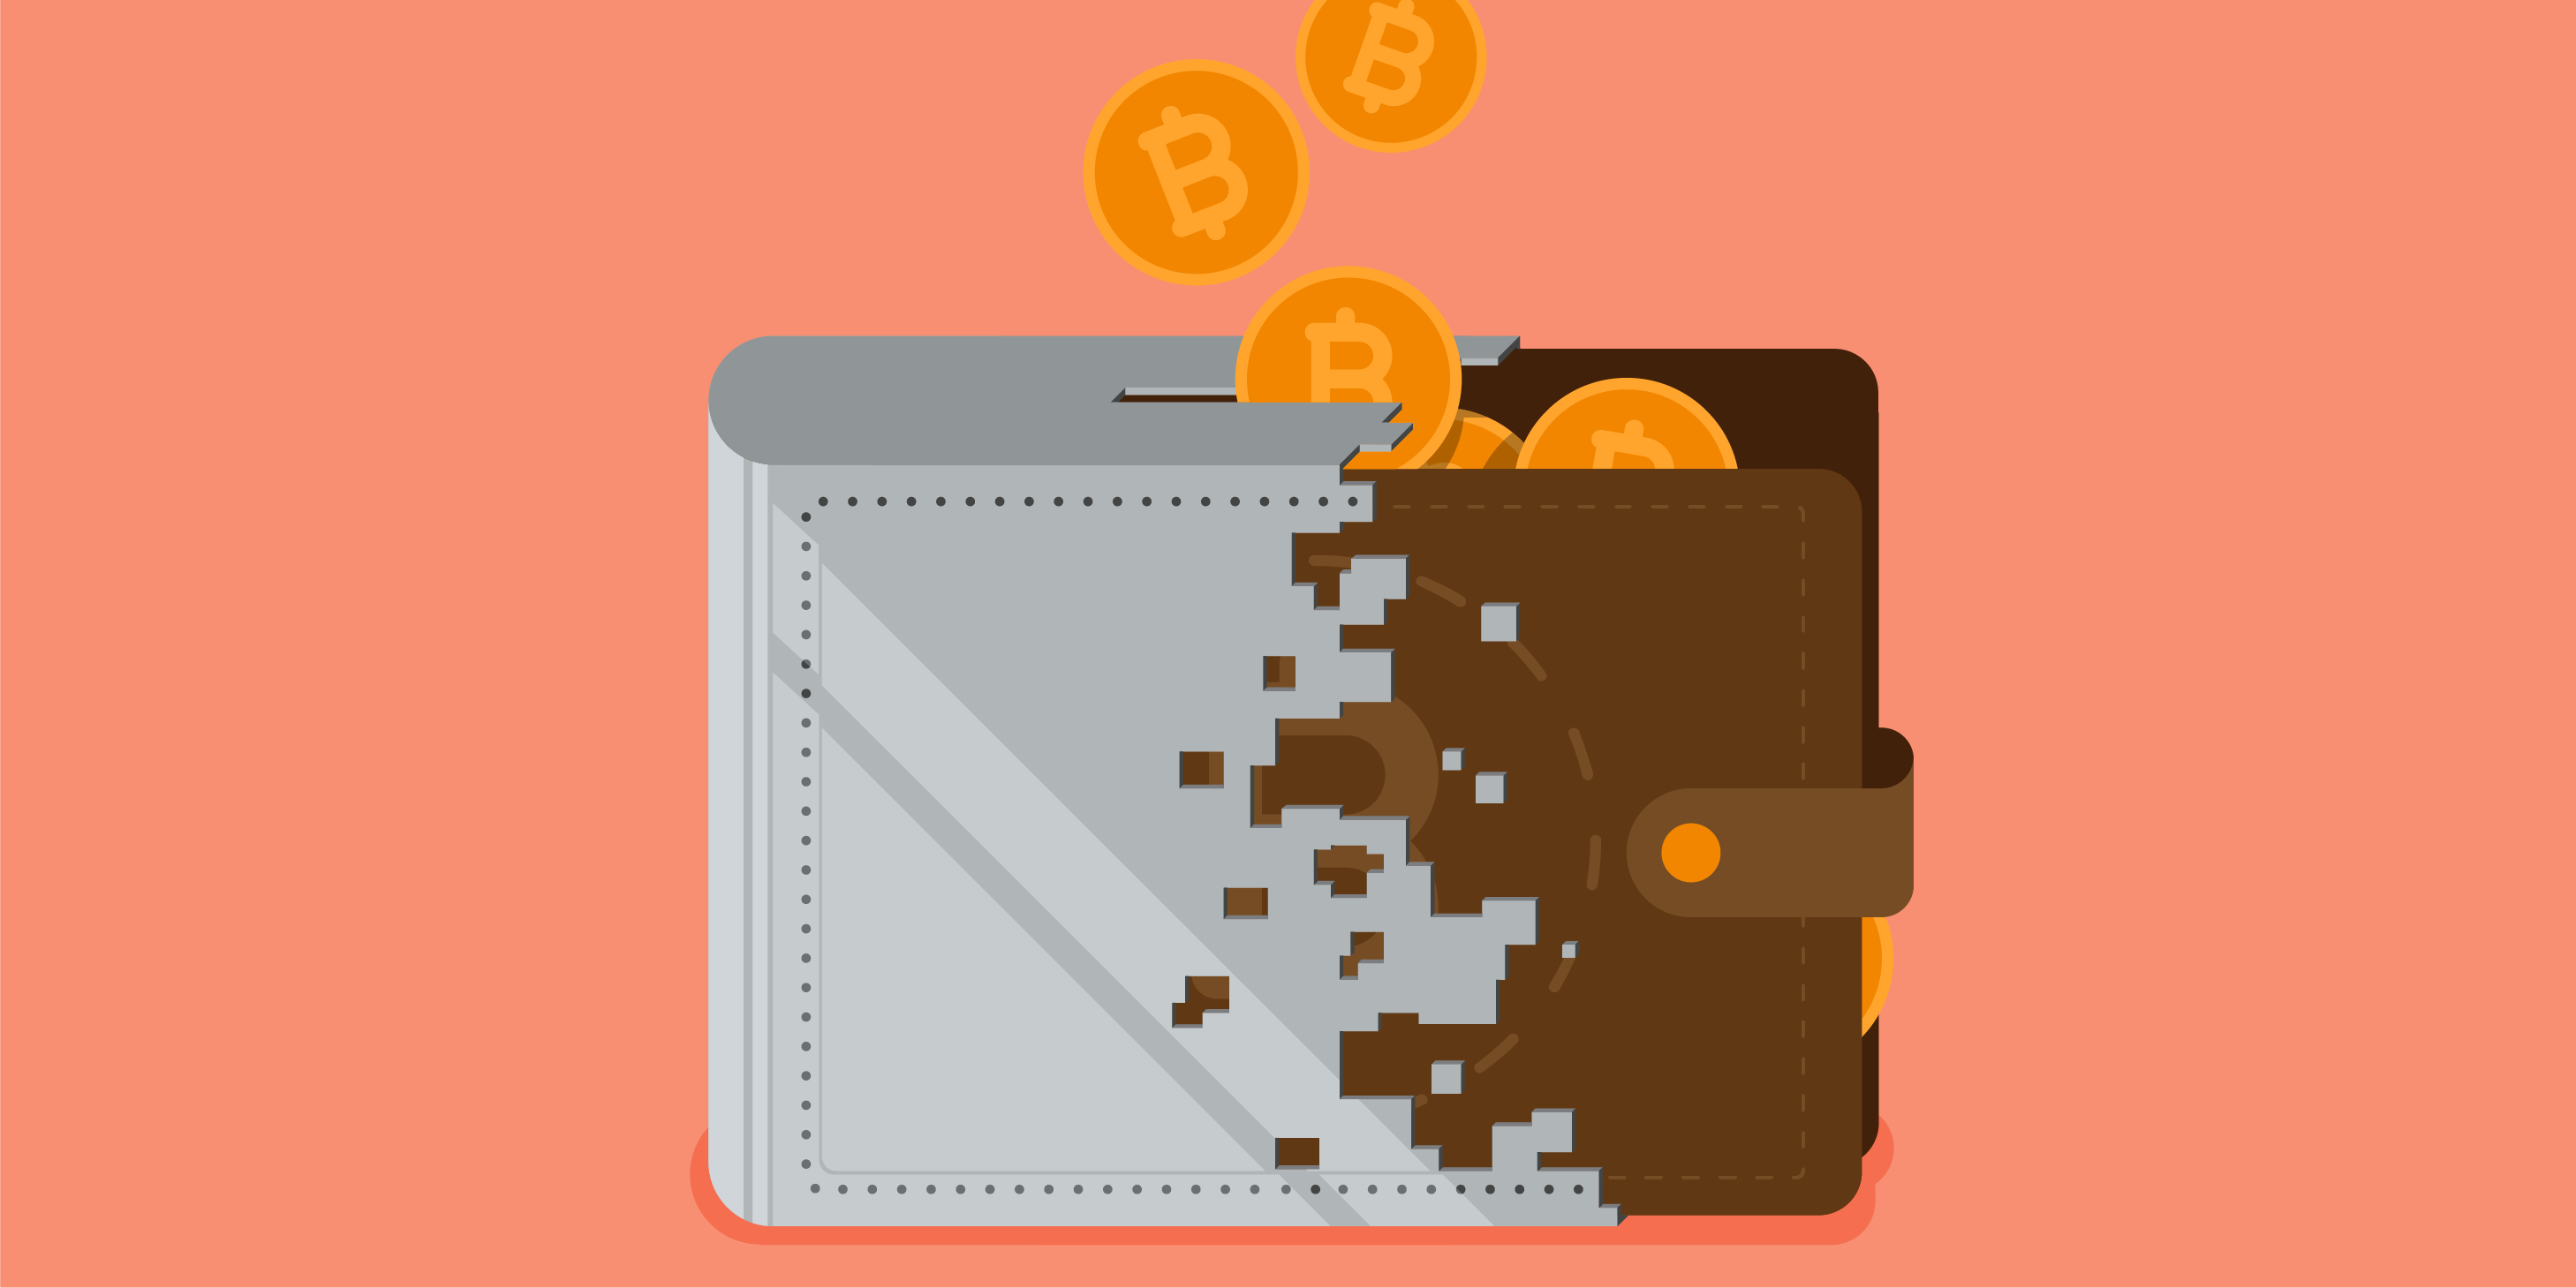 Unsere Empfehlung für eine sichere Crypto Wallet